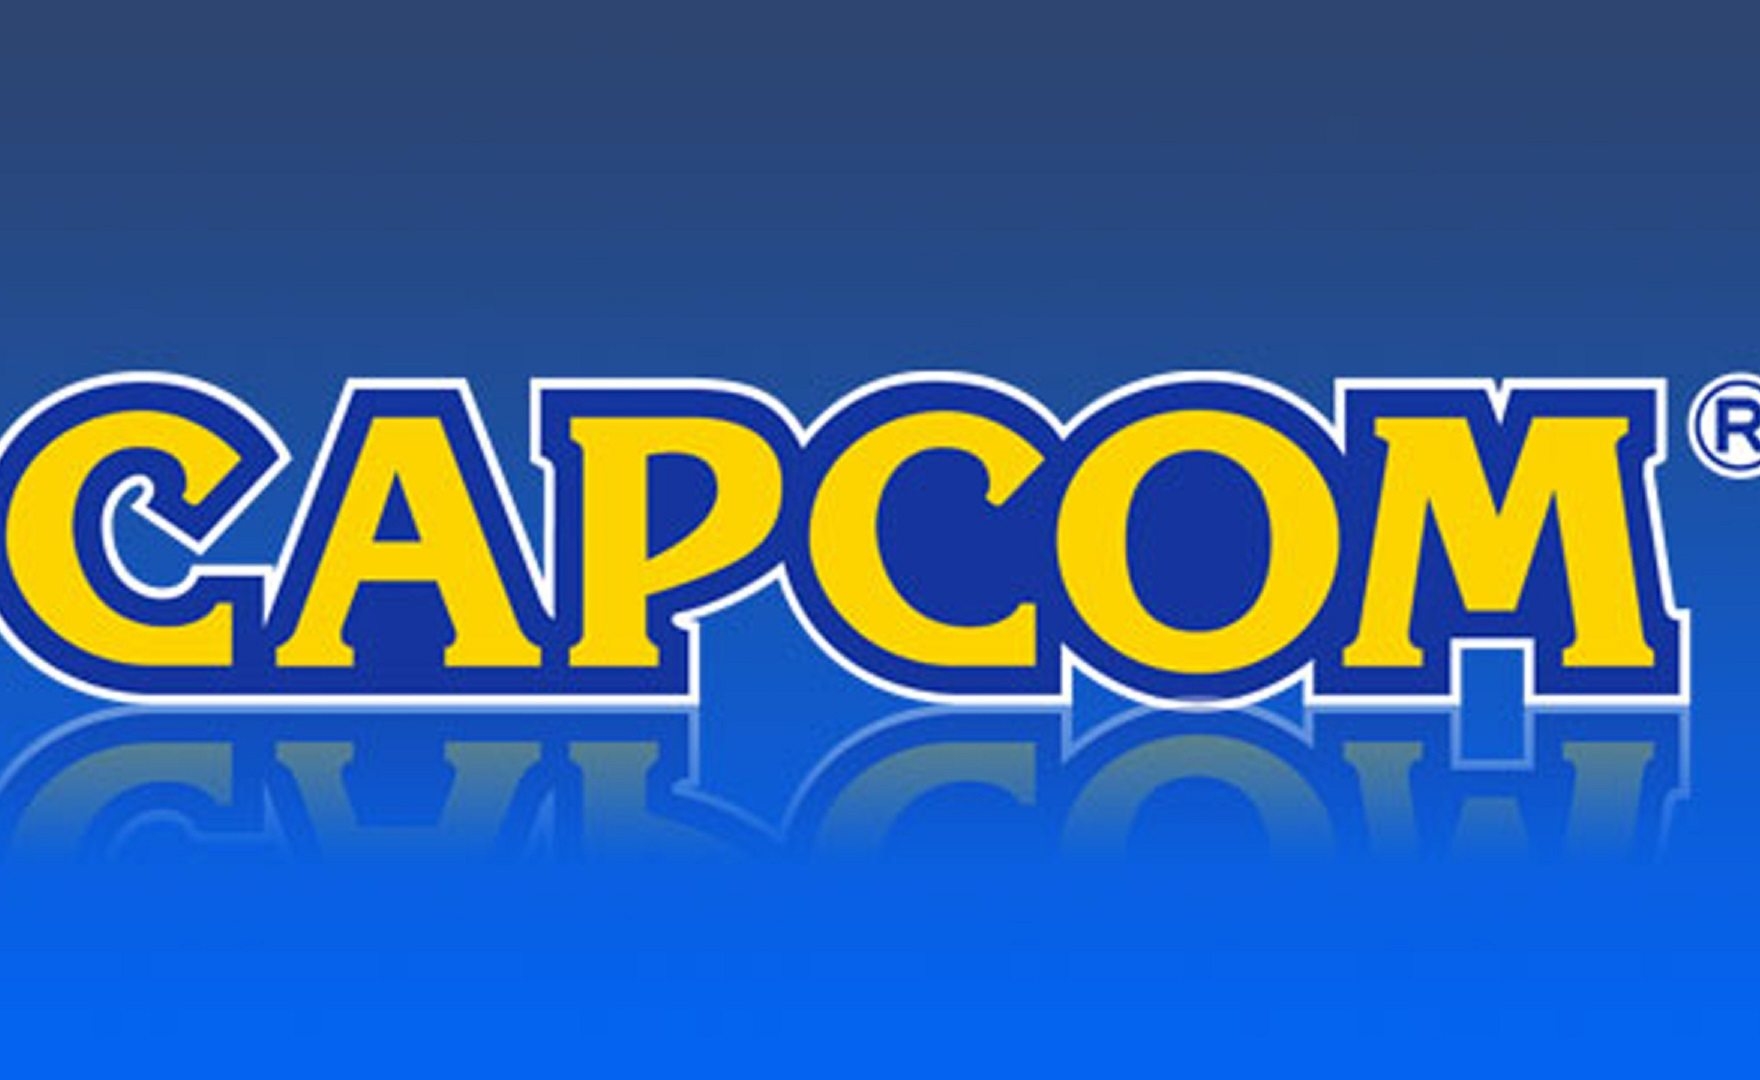 Capcom tornerà presto a sviluppare nuove IP